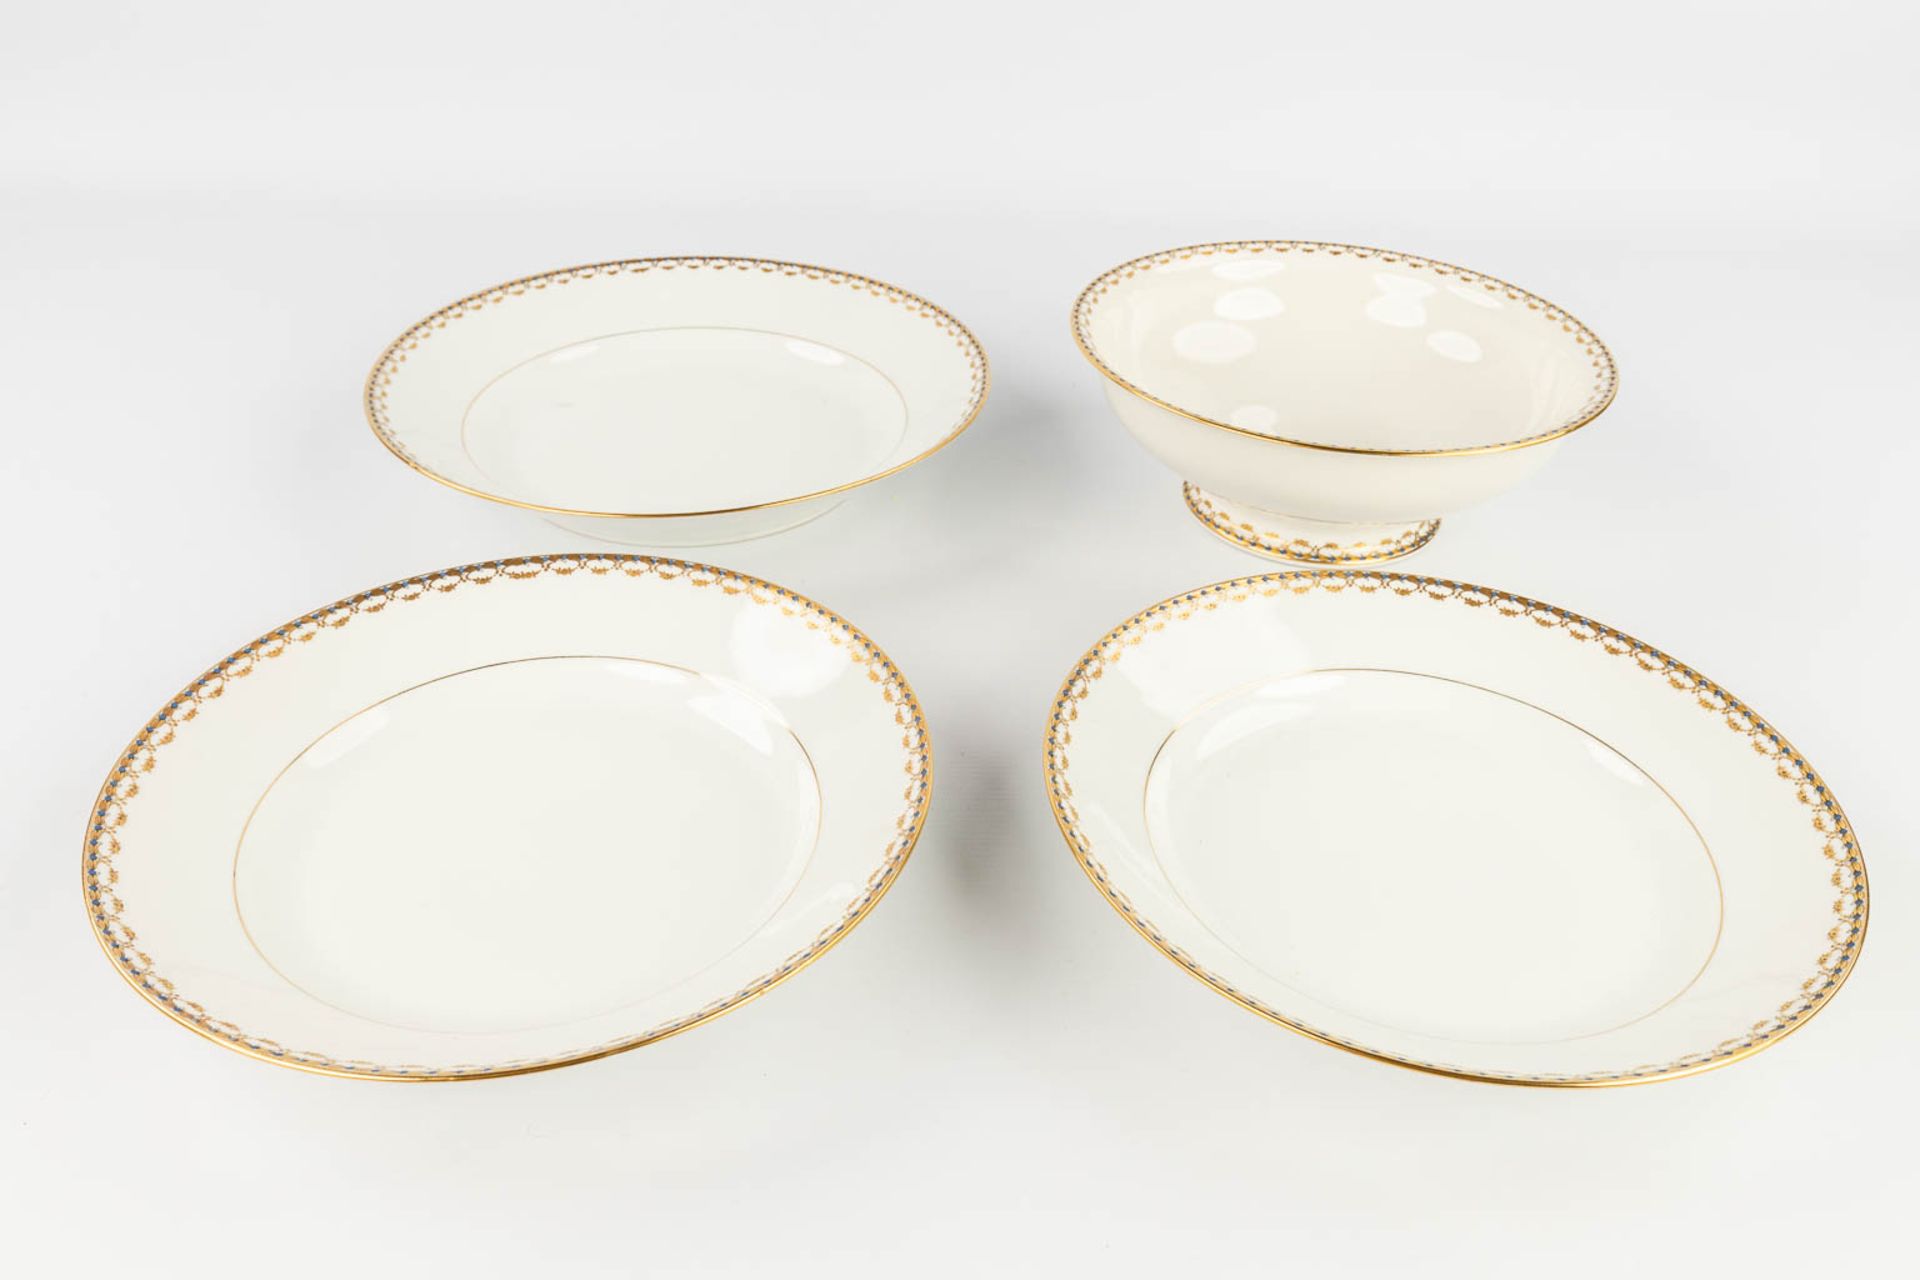 Porcelaine De Limoges, a 77 piece large dinner service. (L: 29 x W: 44 cm) - Image 15 of 20